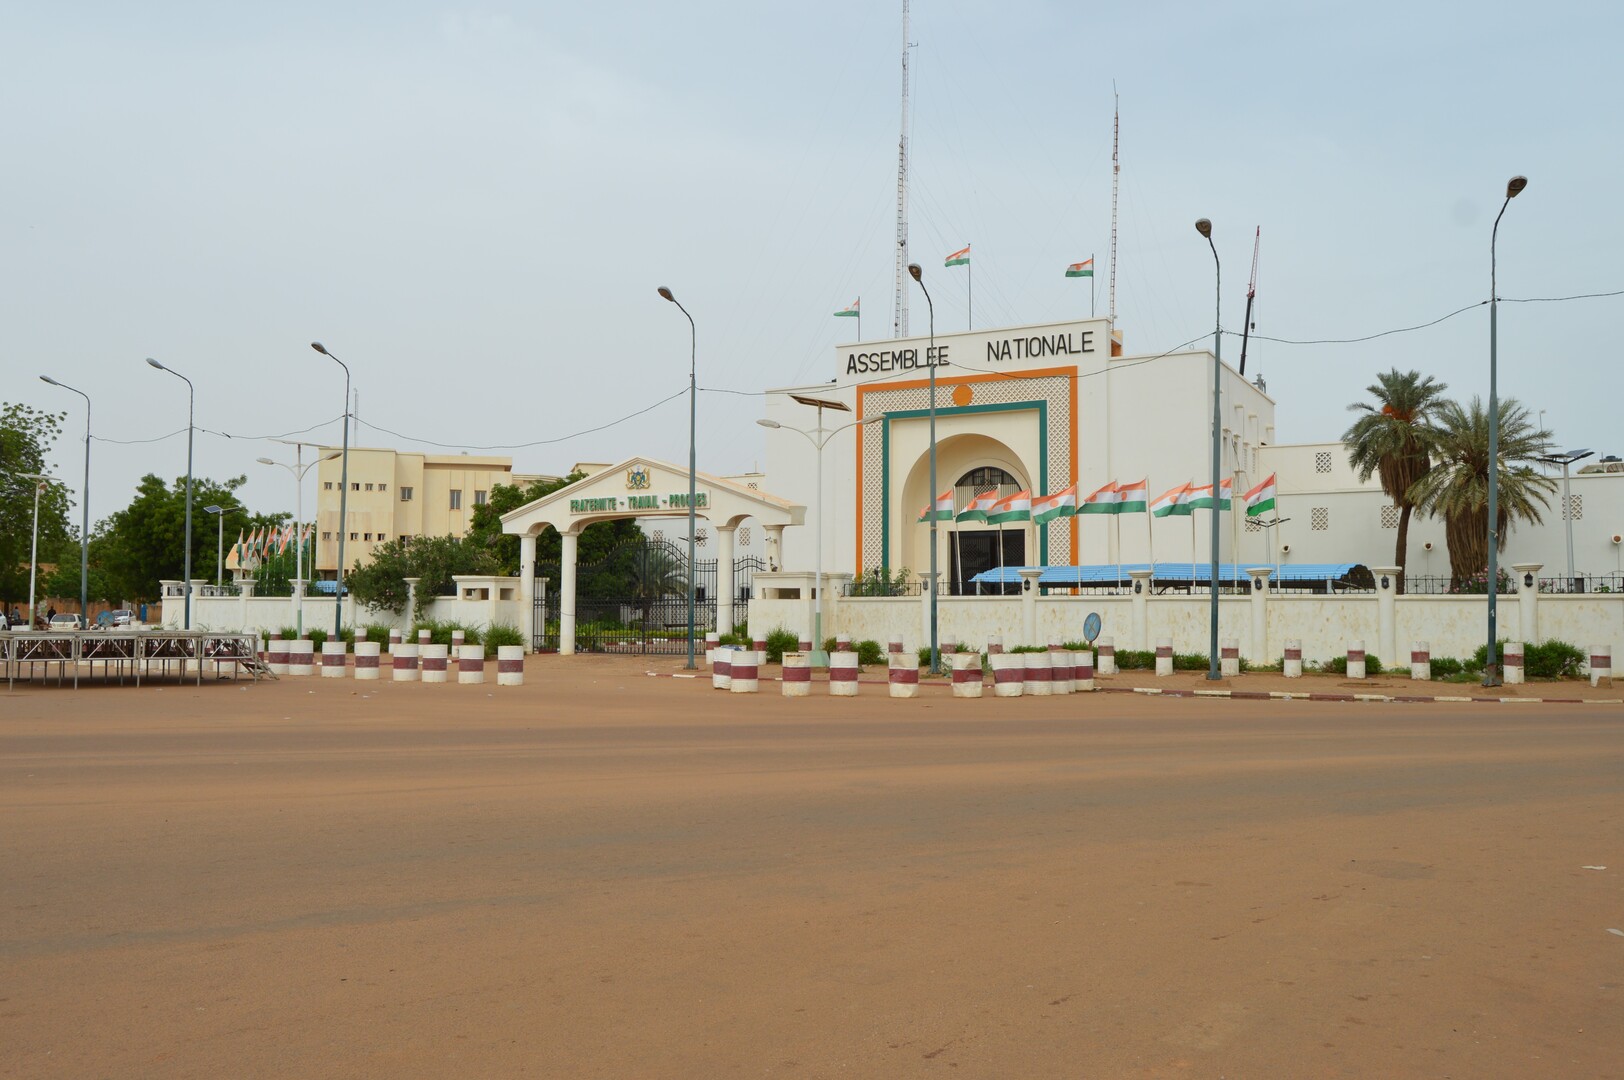 الجمعية الوطنية للنيجر في نيامي، عاصمة النيجر.